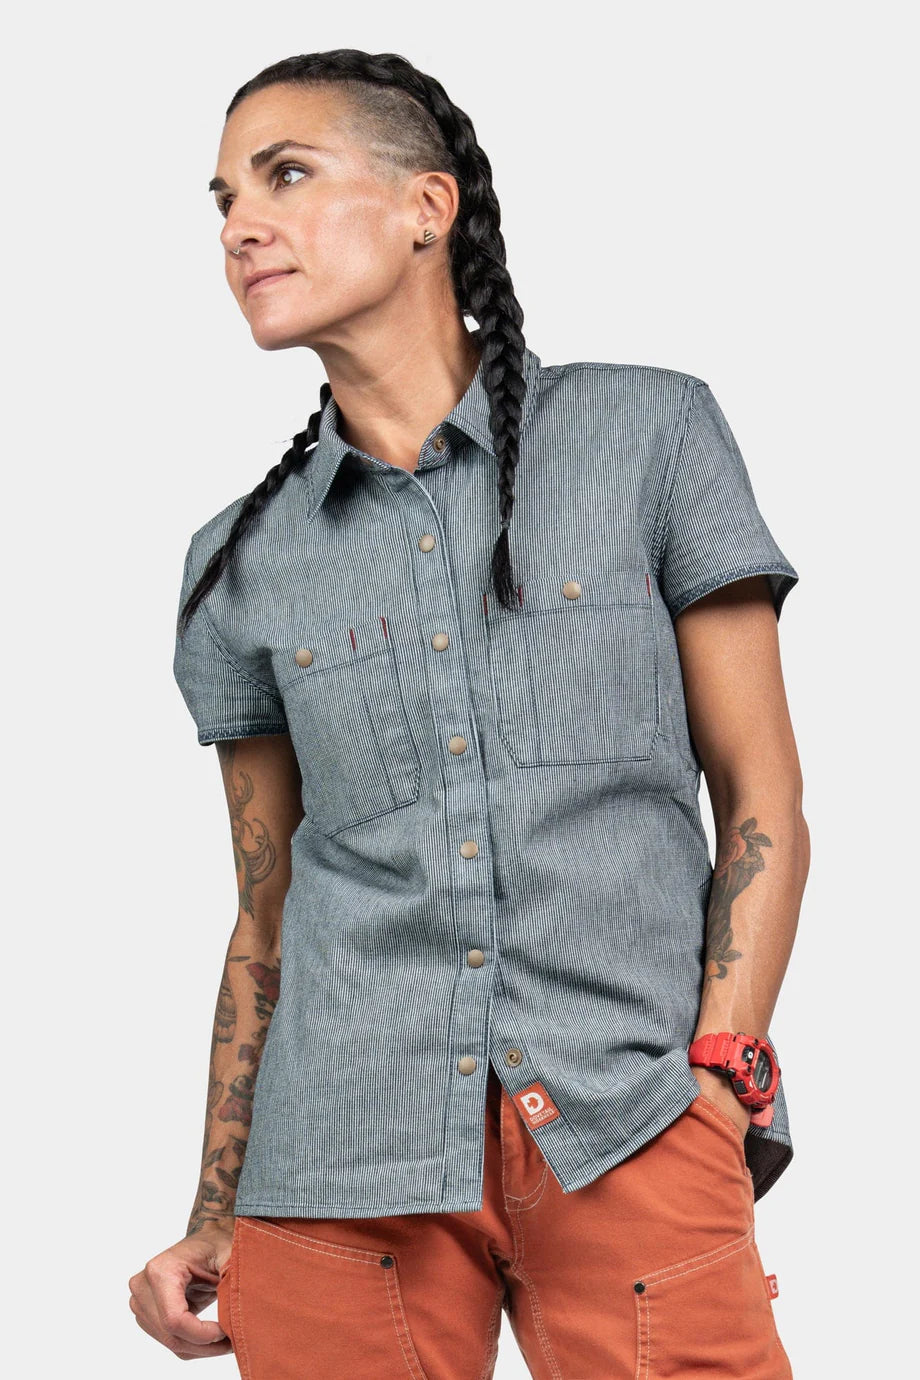 Women's Mechanic's Work Shirt - Indigo Stripe